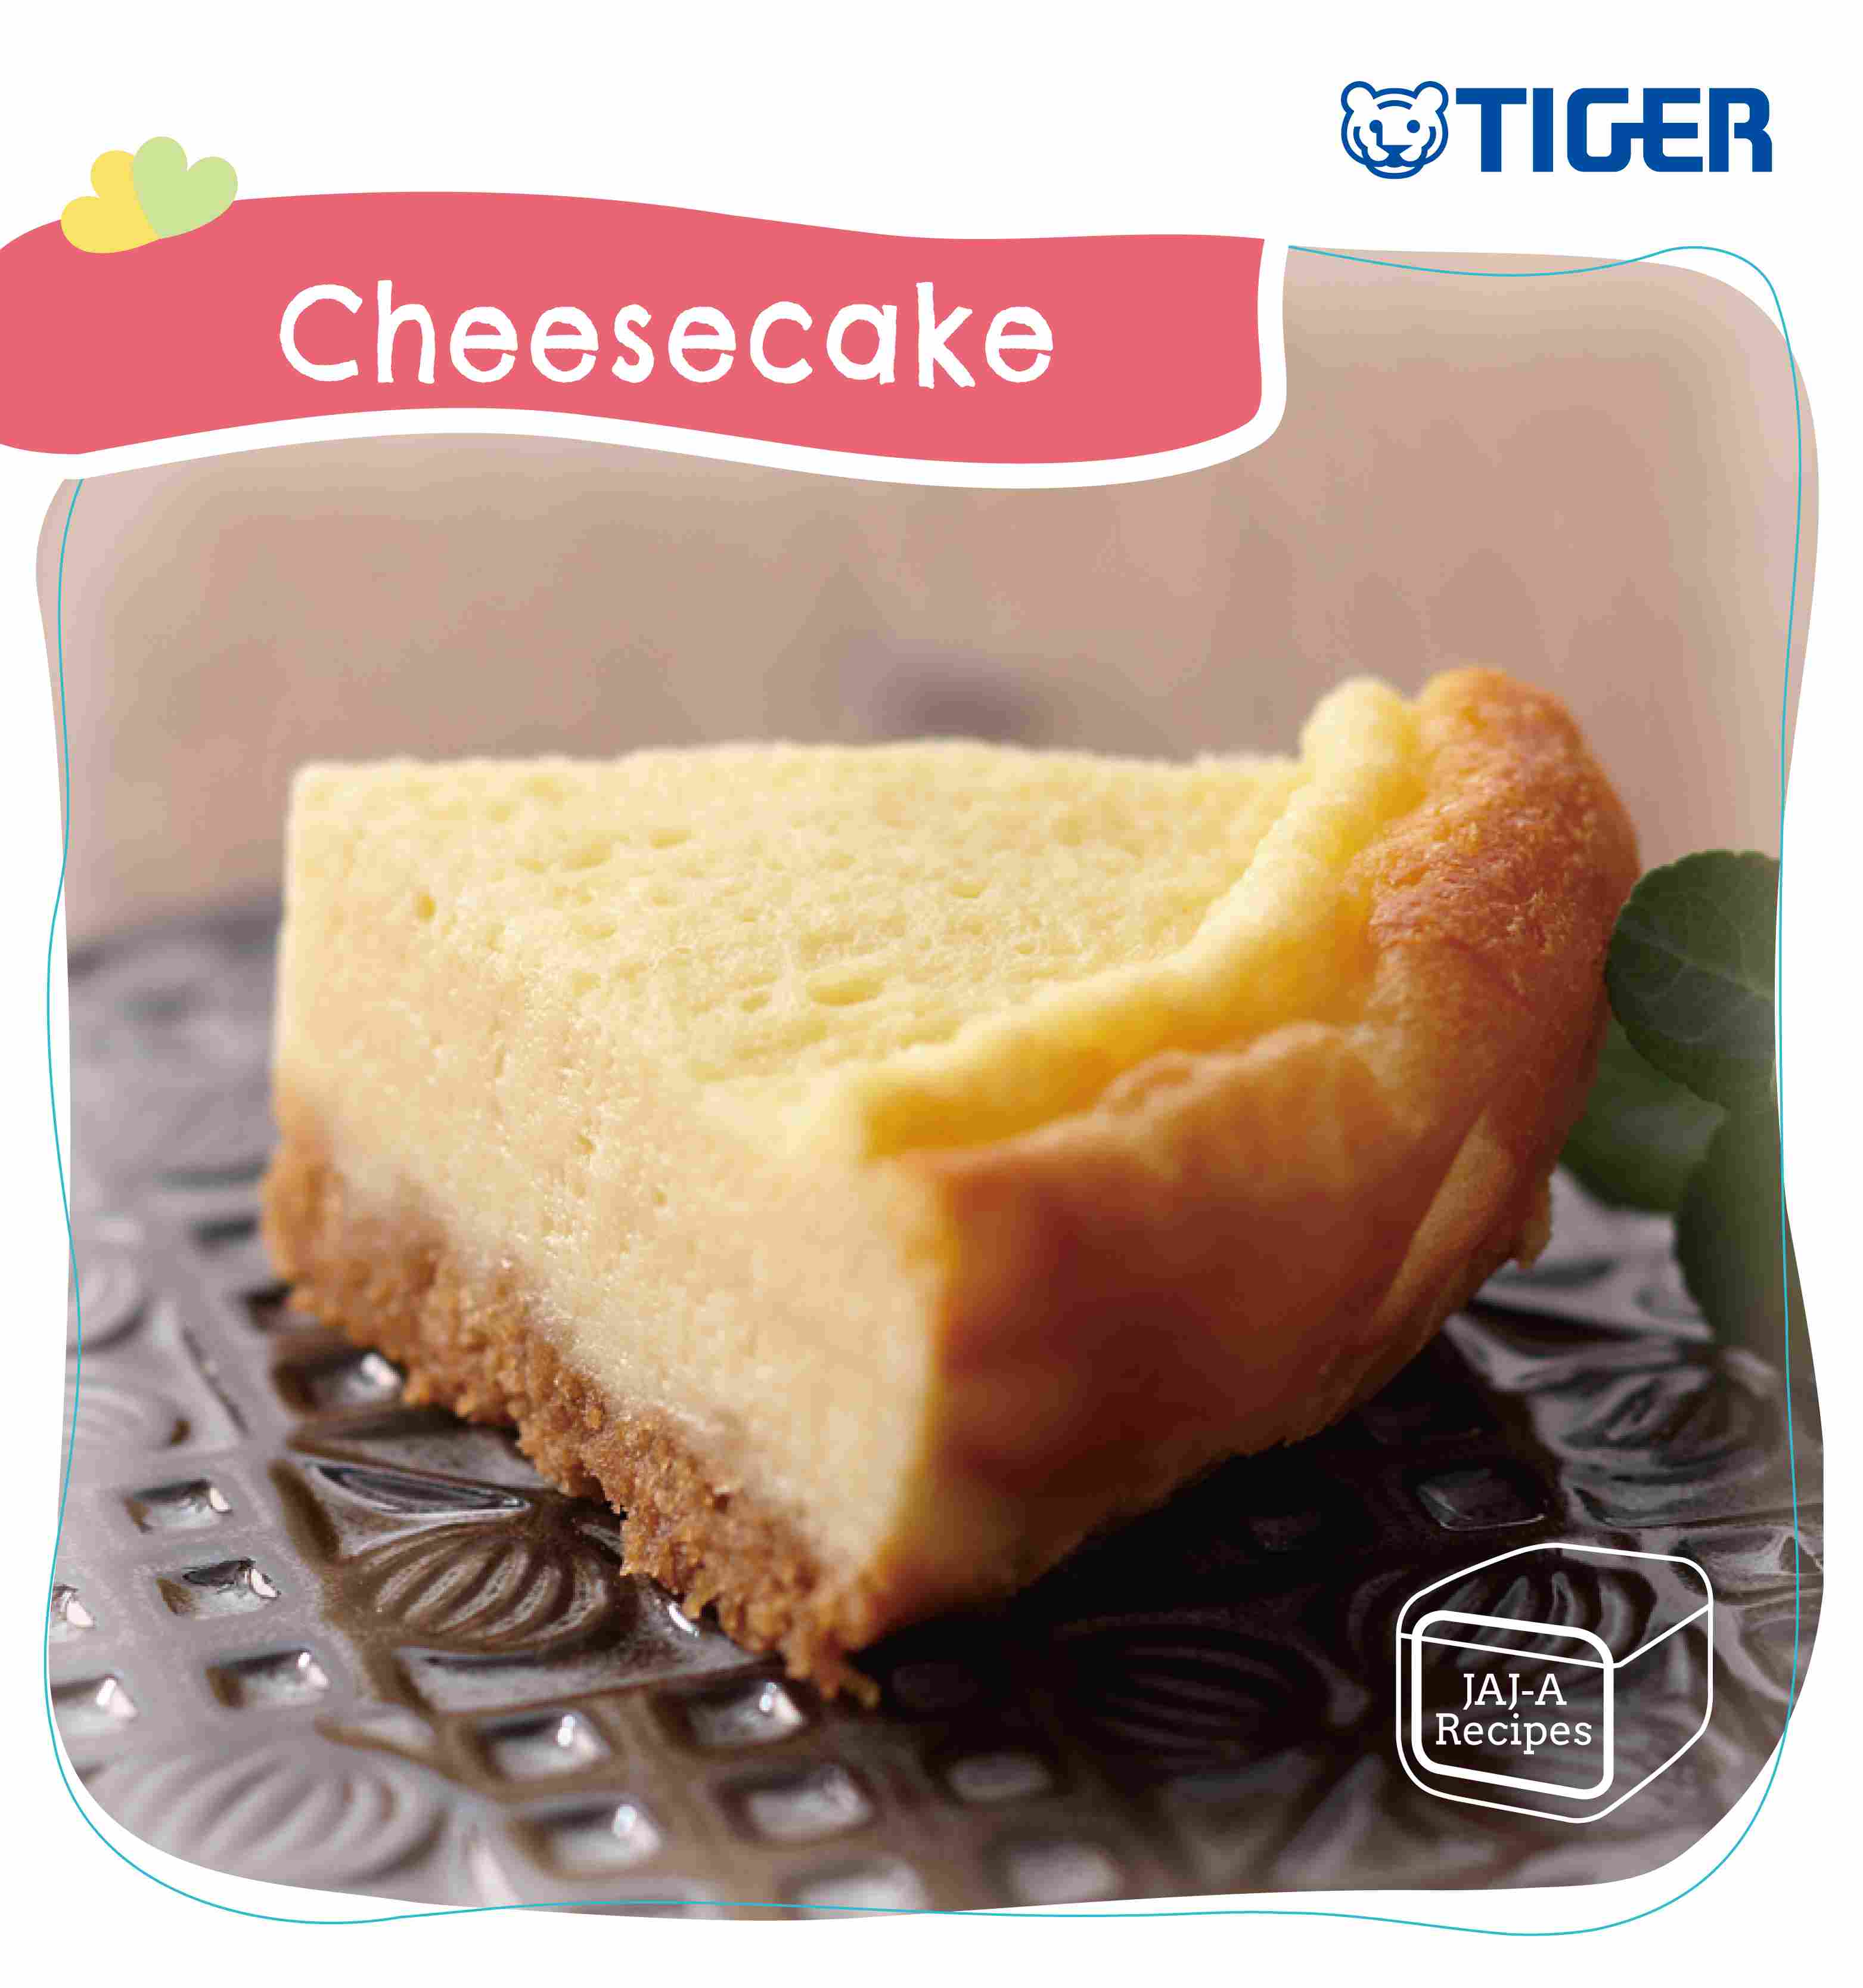 TIGER-recipe-cheesecake-en-2.jpg (234 KB)